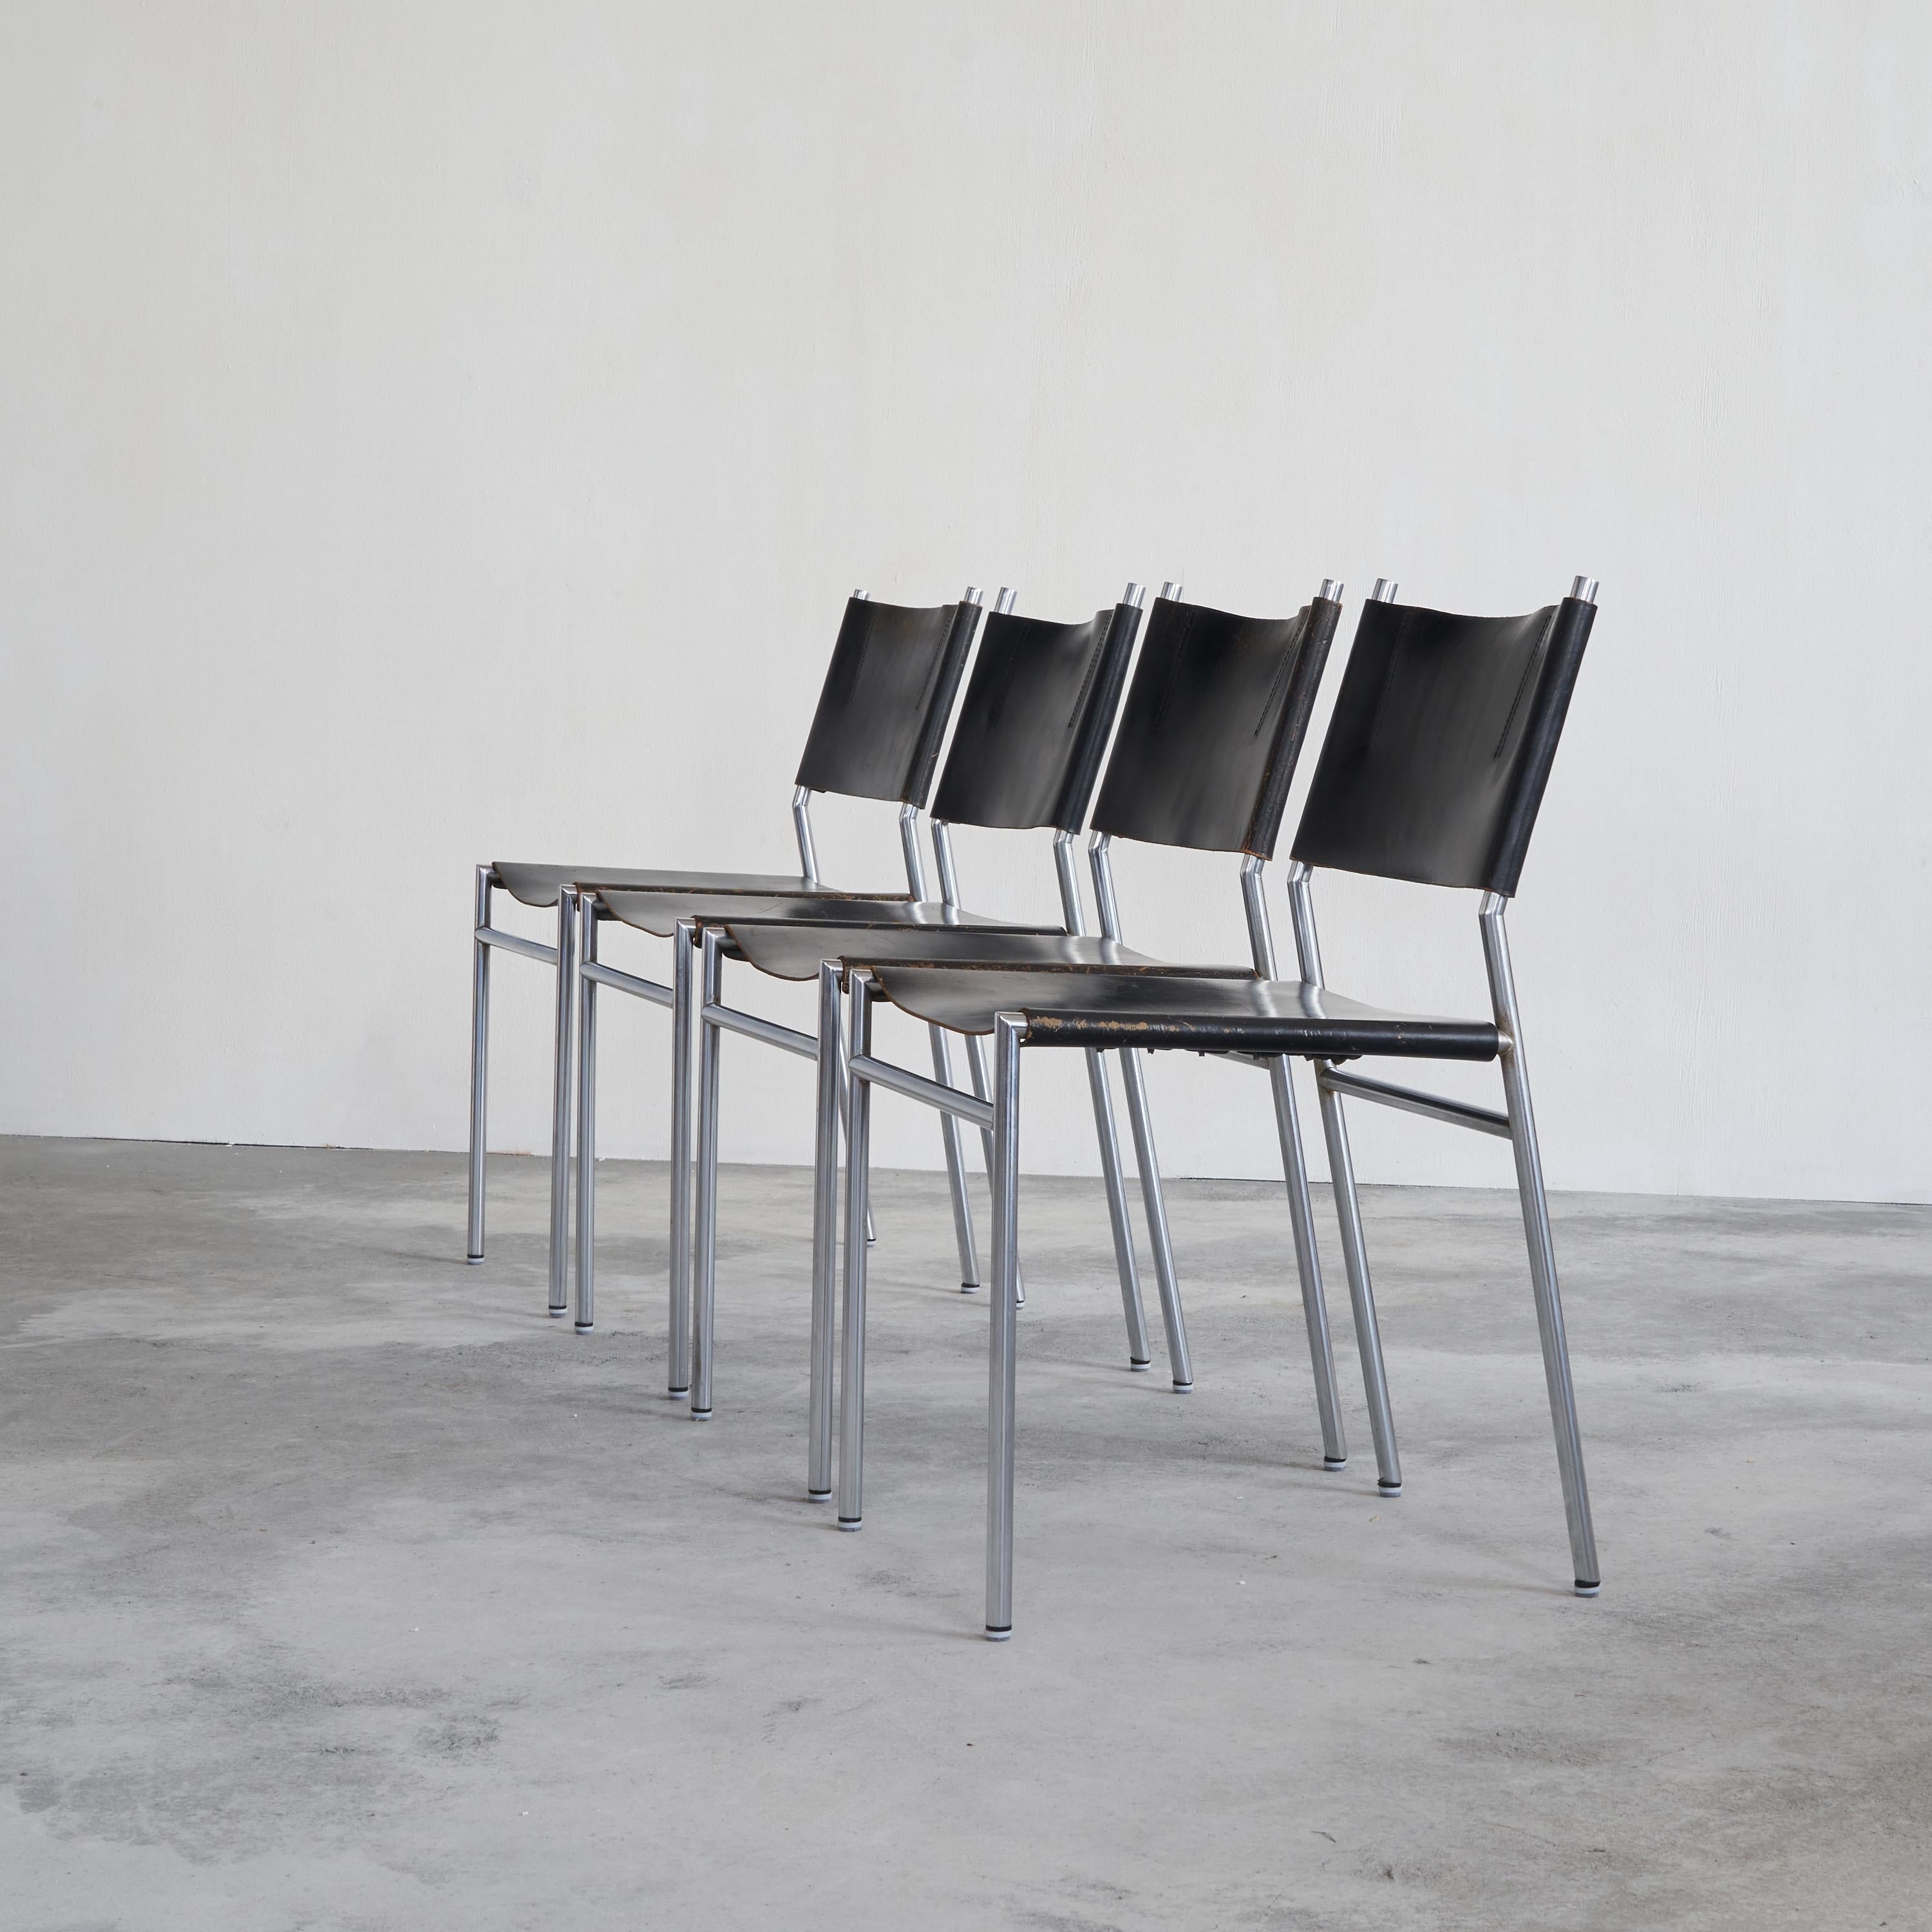 Martin Visser Jeu de 4 chaises 'SE06' en cuir noir patiné. Pays-Bas, années 1970.

Des lignes épurées et une utilisation distincte du cuir et du métal. Le SE06, conçu en 1960, est l'un des meilleurs modèles du designer néerlandais Martin Visser. SE